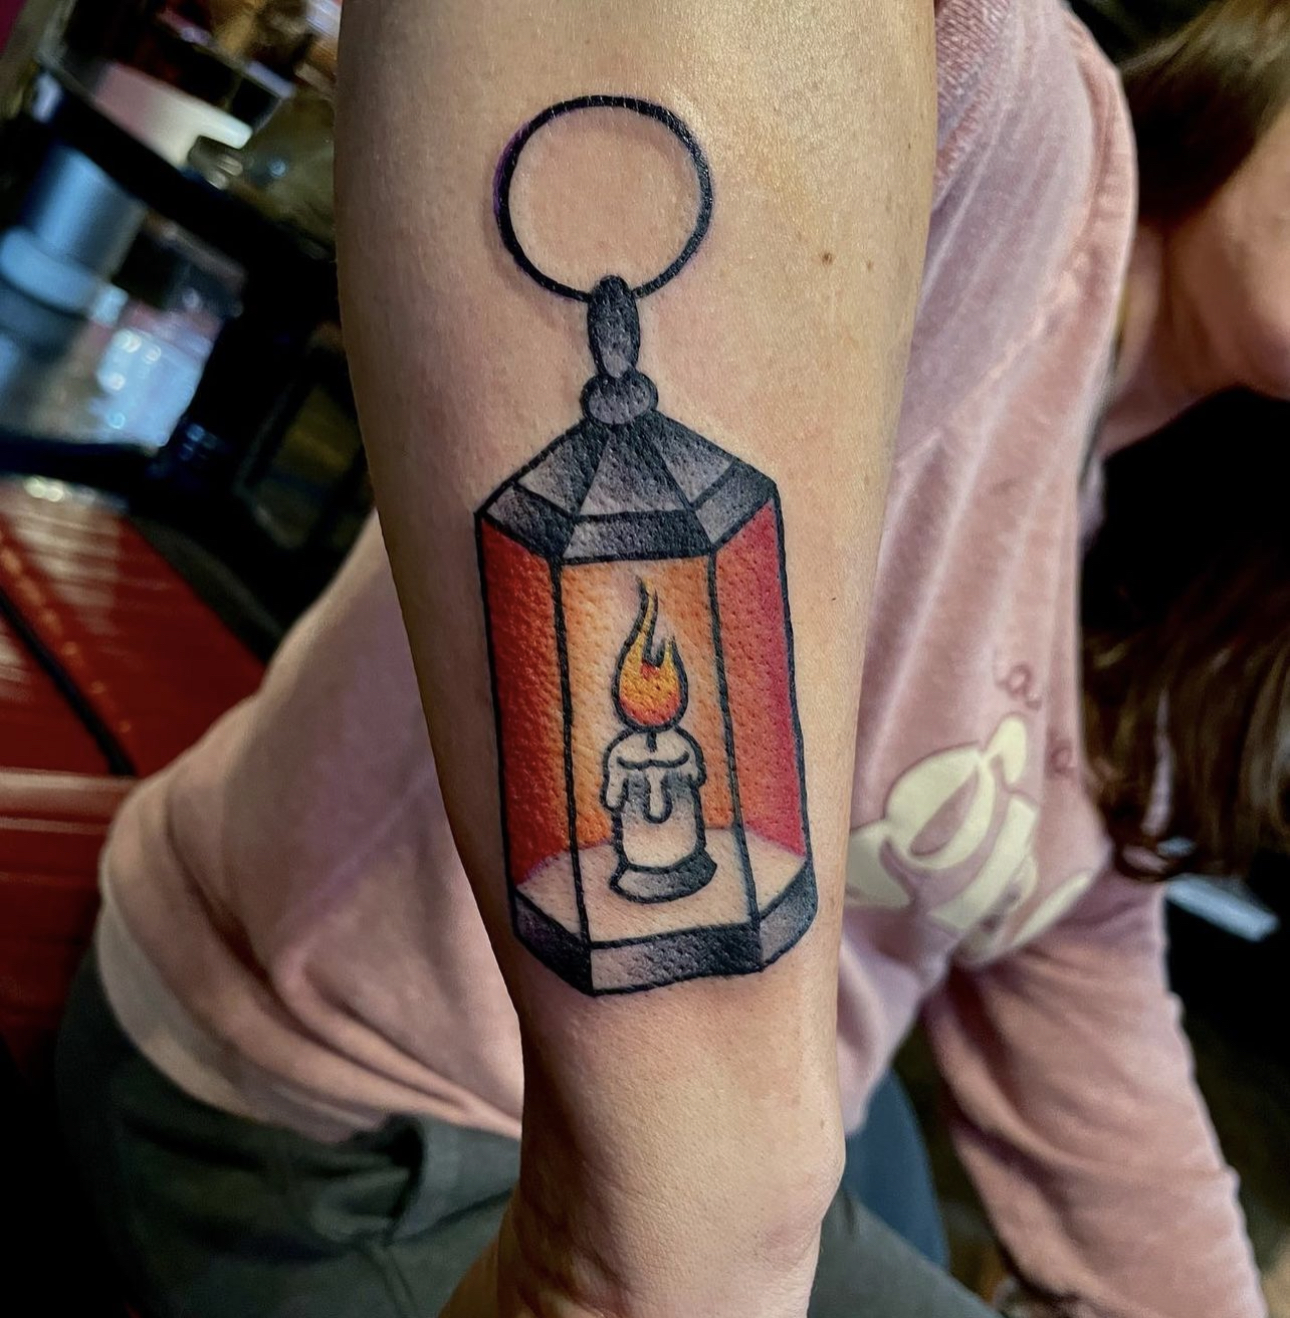 Tattoo of a lit lantern